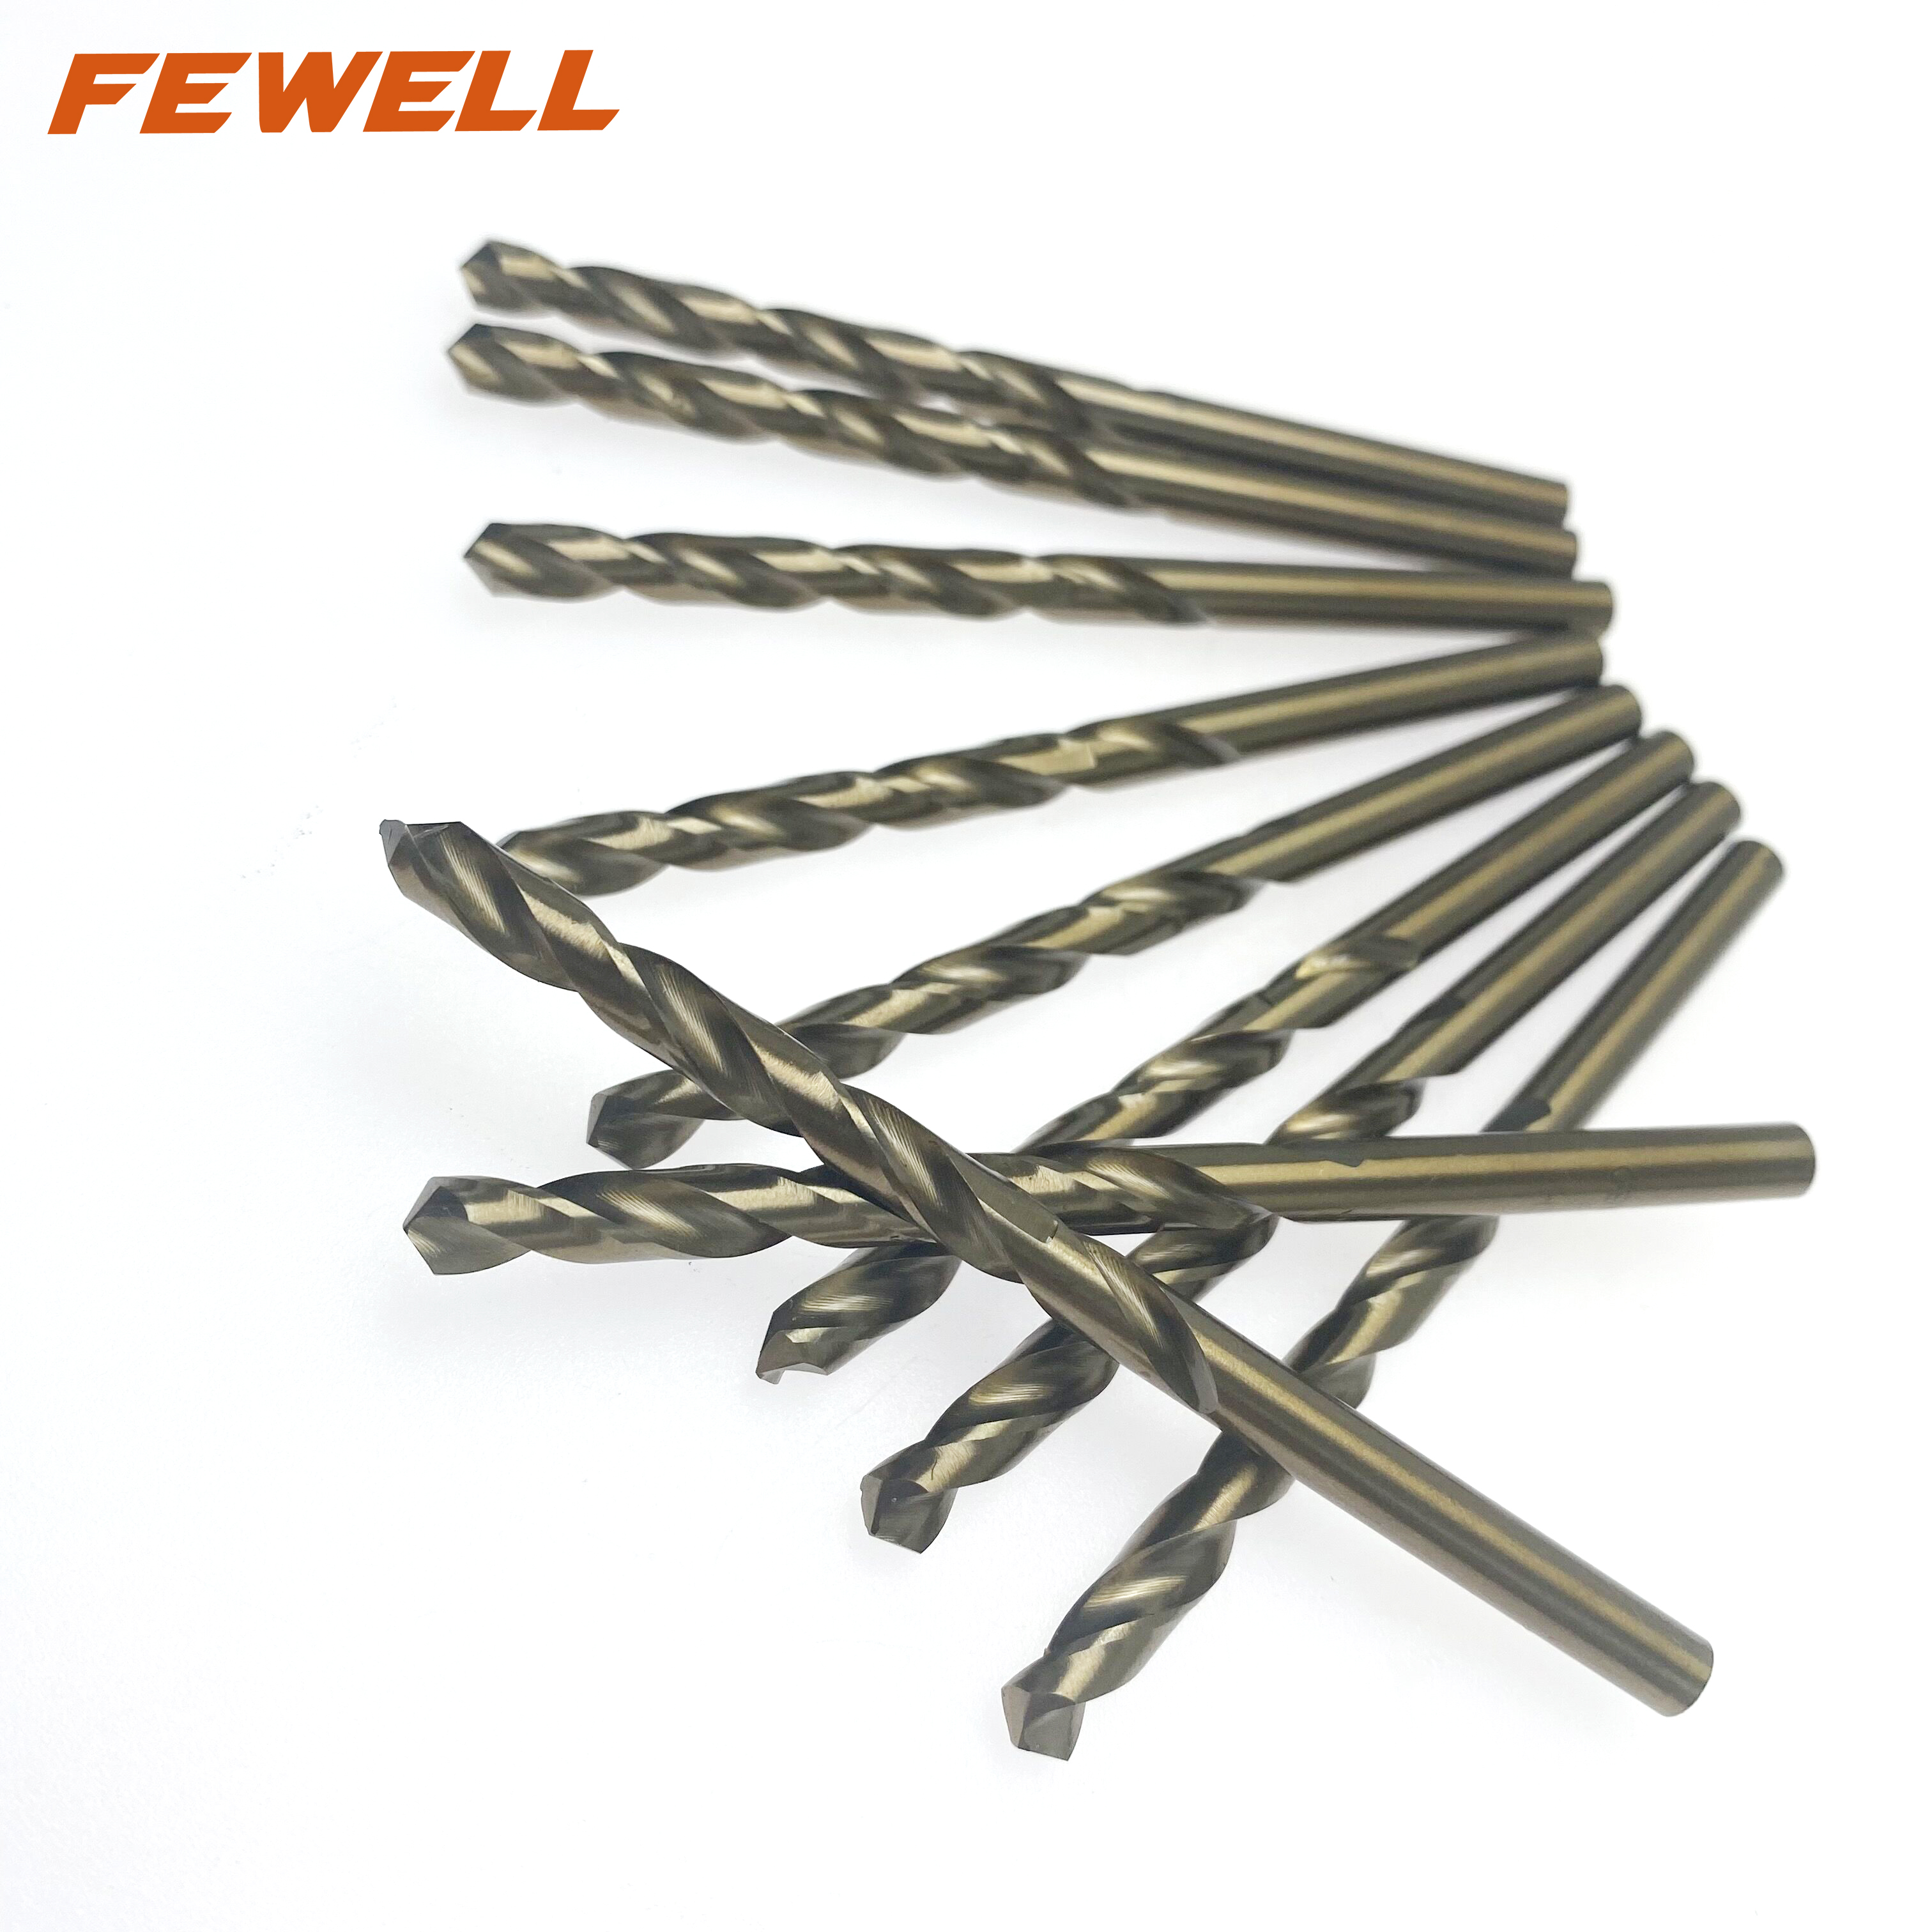 Brocas helicoidales de acero de alta velocidad M2 6542 HSS de 5 mm para taladrar metal hierro aluminio